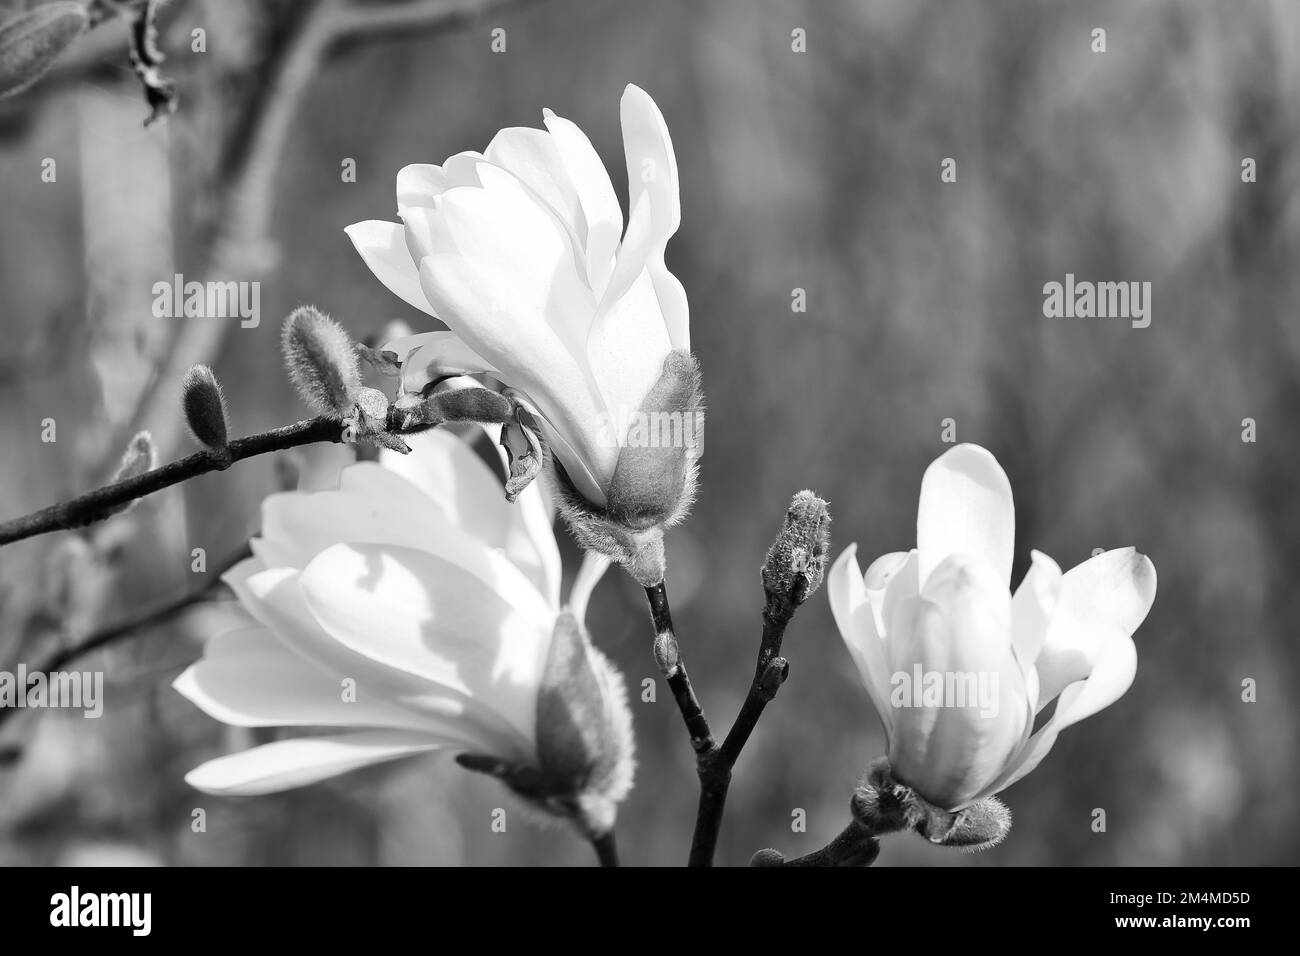 Magnolienblüte auf einem Magnolienbaum in Schwarz-Weiß. Magnolienbäume sind in der Blütezeit eine wahre Pracht. Ein Blickfang in den Landc Stockfoto